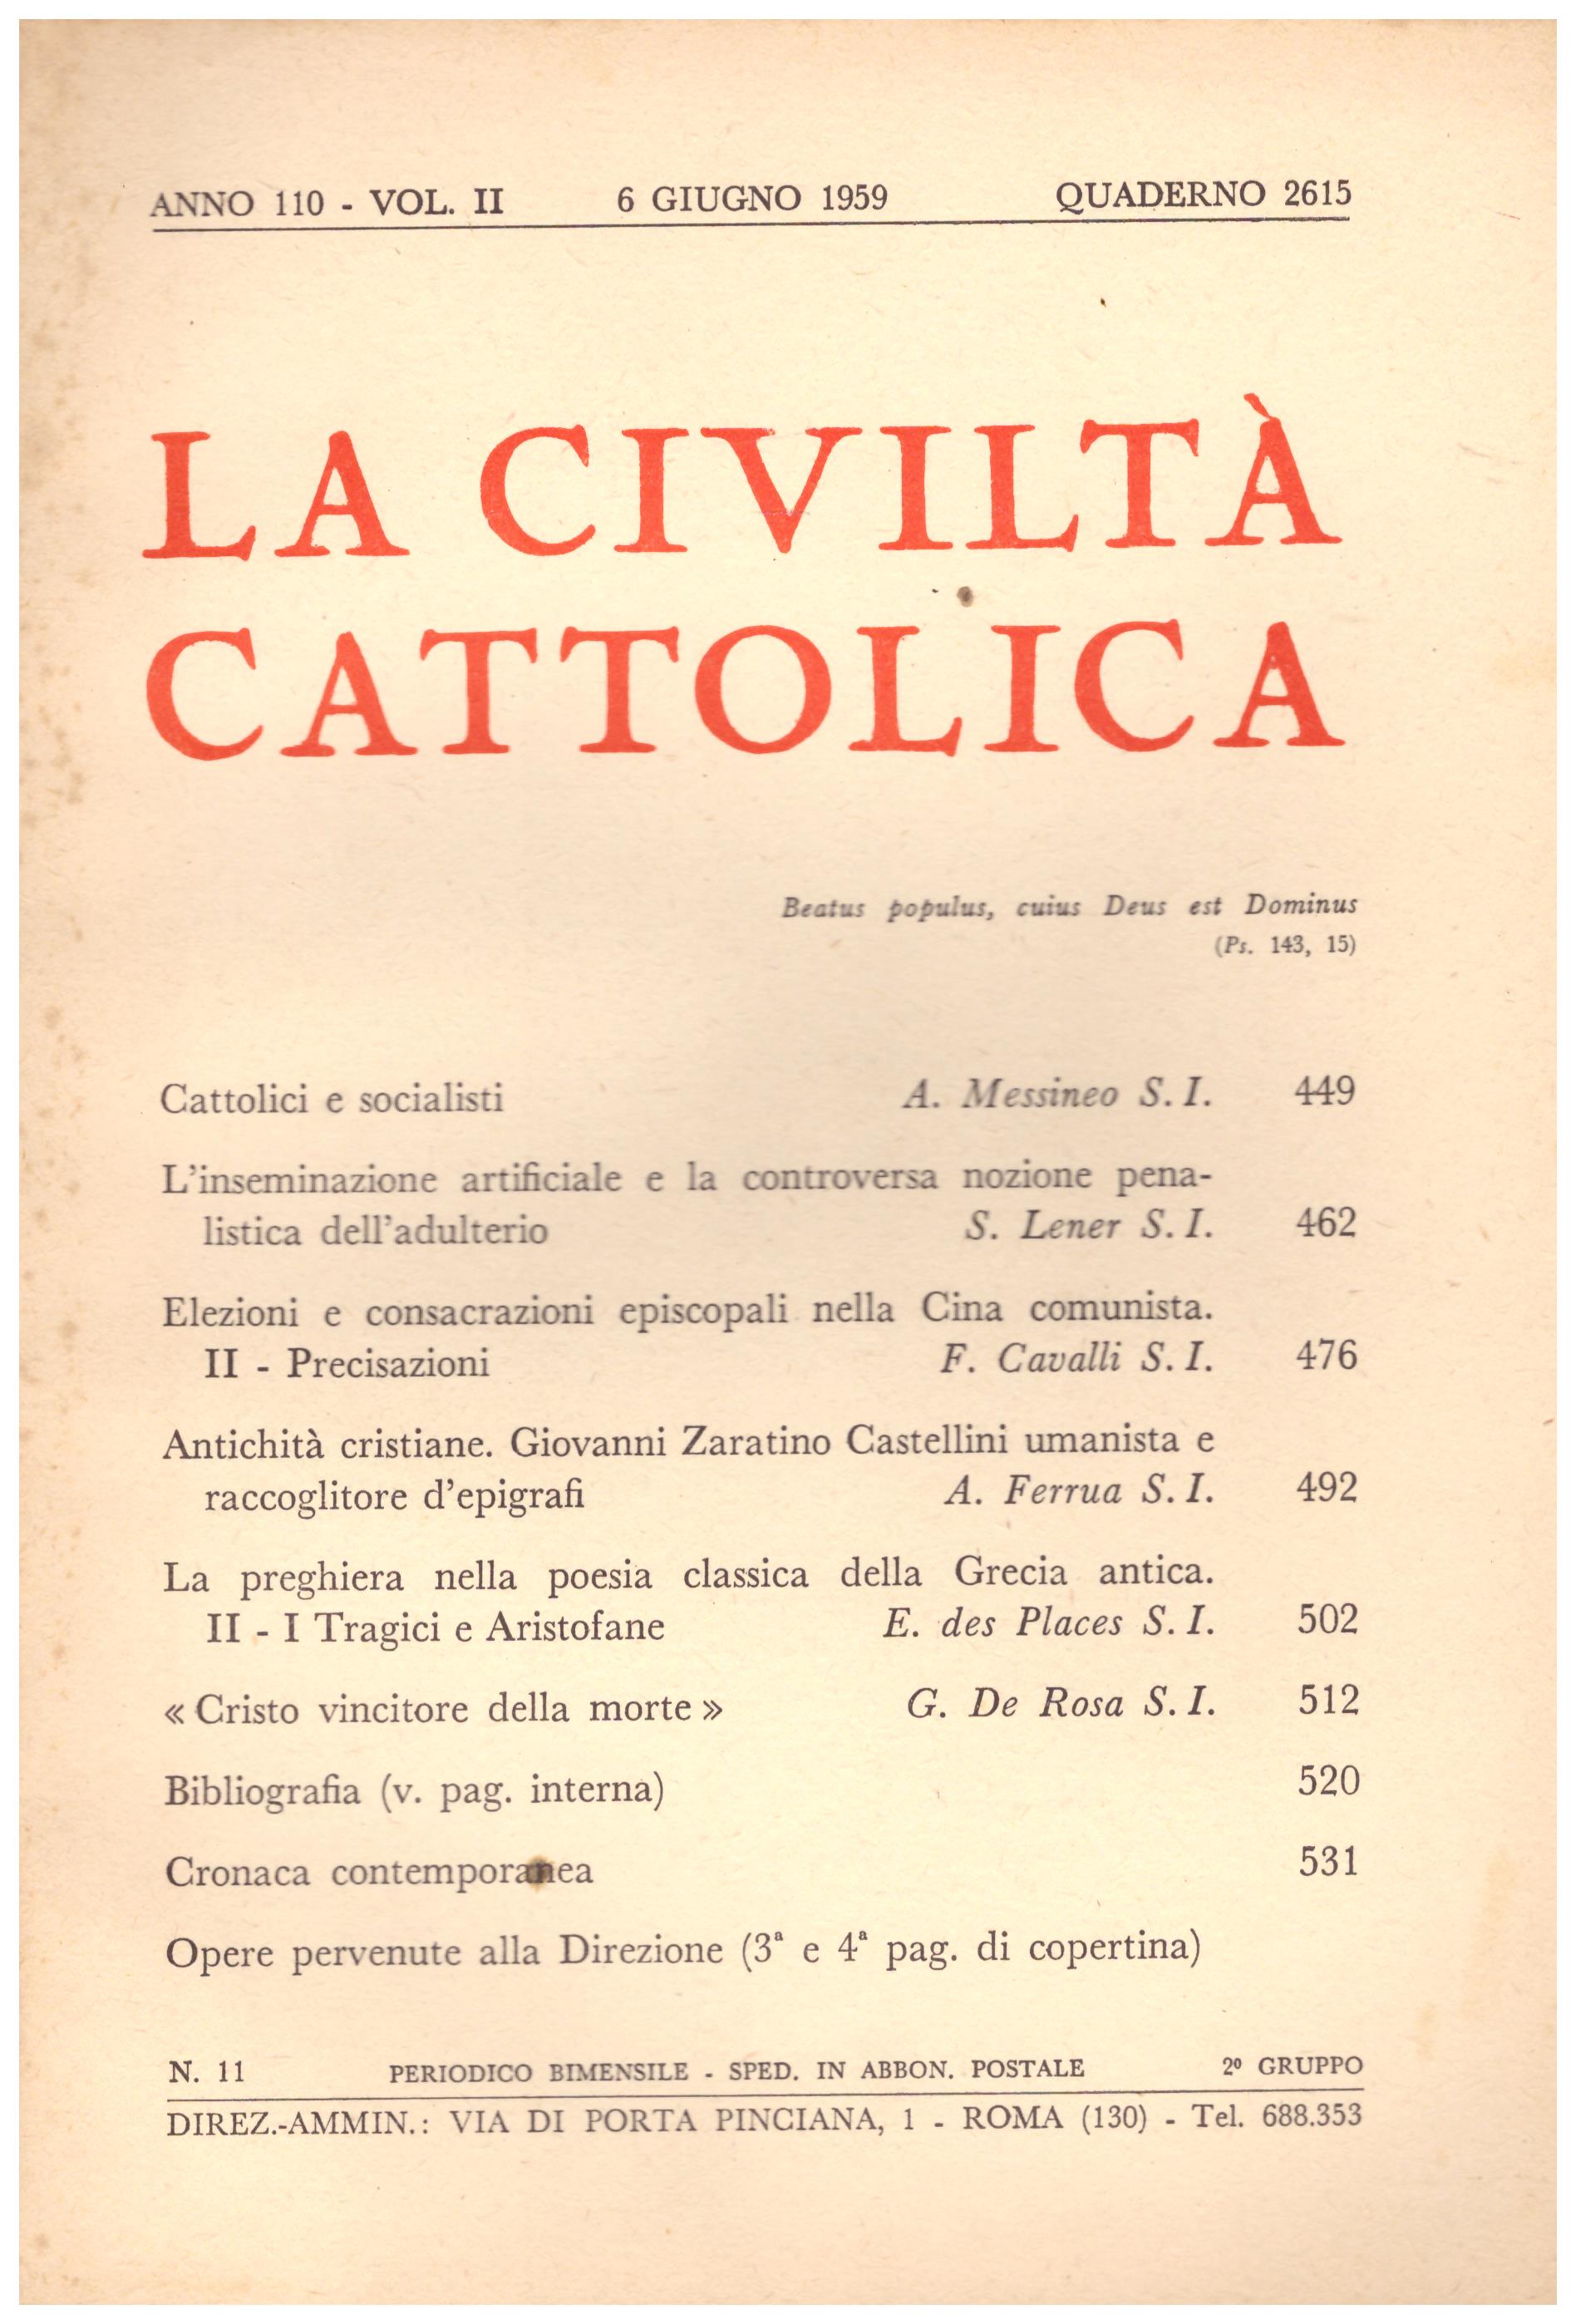 Titolo: La civiltà cattolica quaderno 2615  Autore: AA.VV.  Editore: periodico ammin. via di porta Pinciana 1 Roma, 1959